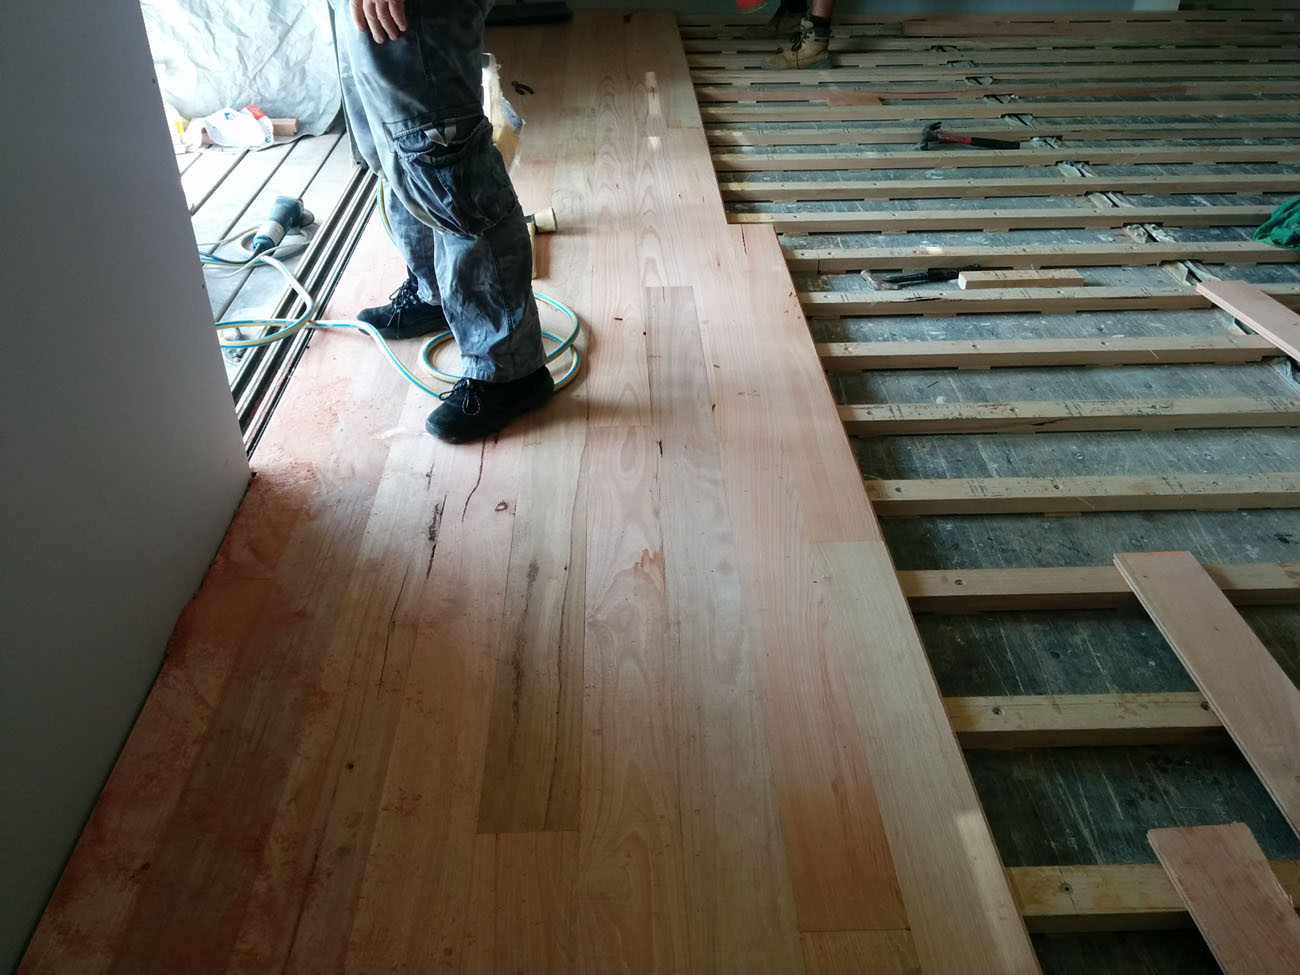 hardwood timber flooring brisbane of shipping container house hardwood flooring 135 odpod shipping within shipping container house hardwood timber floor